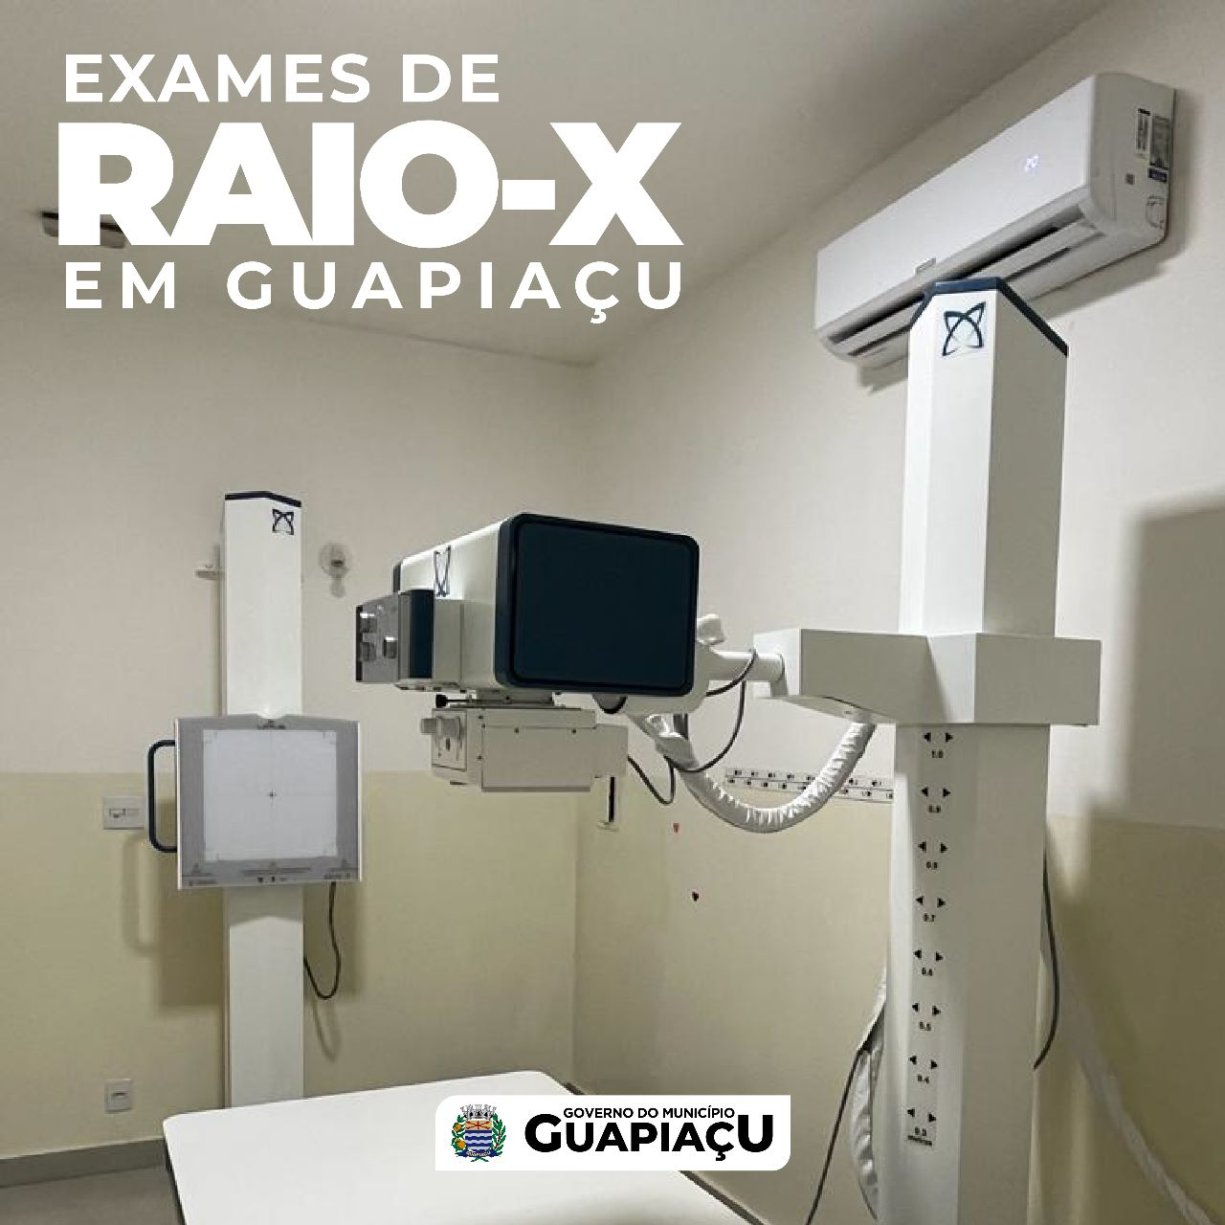  Exames de RAIO X em Guapiaçu.